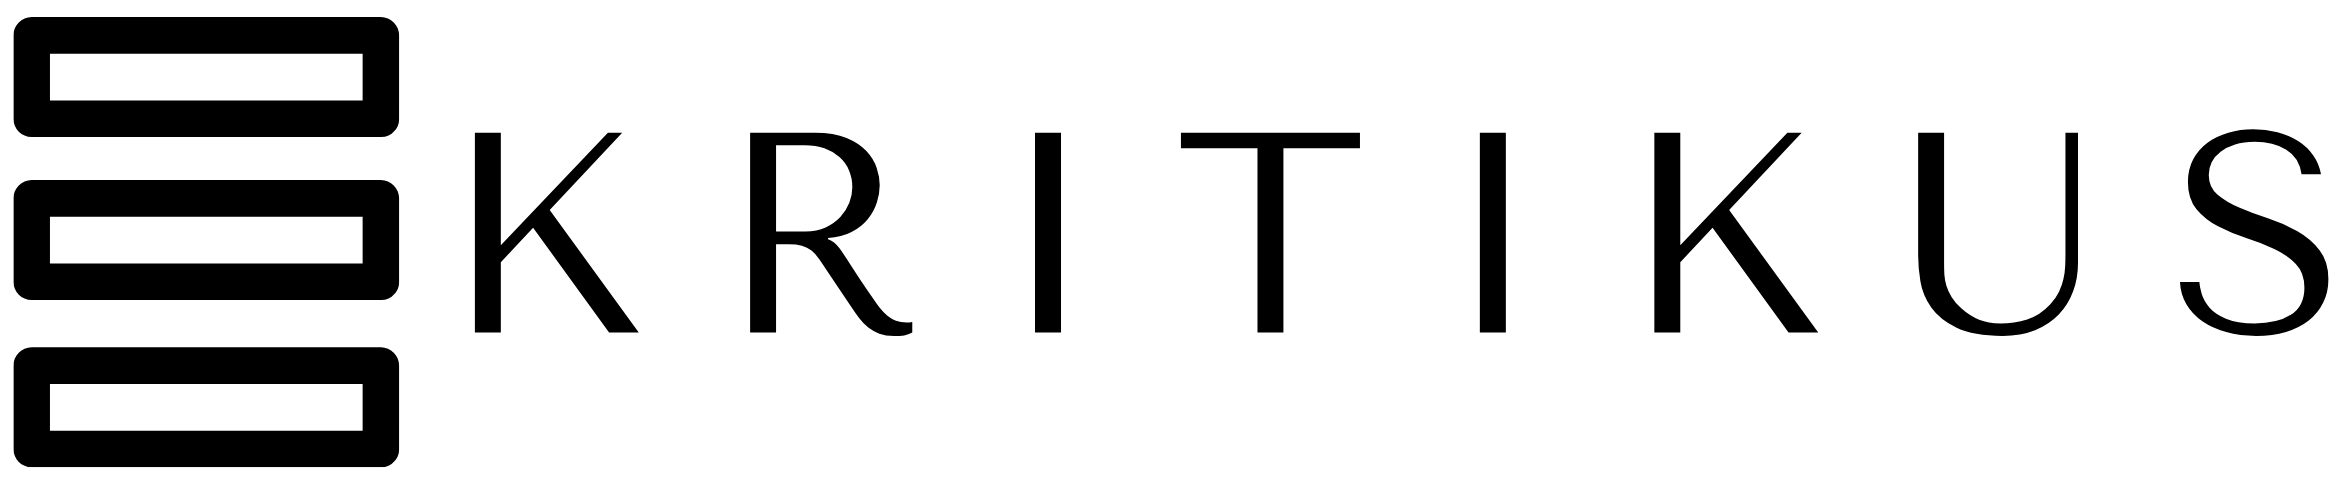 Das Logo des Kritikus in schwarz weiß